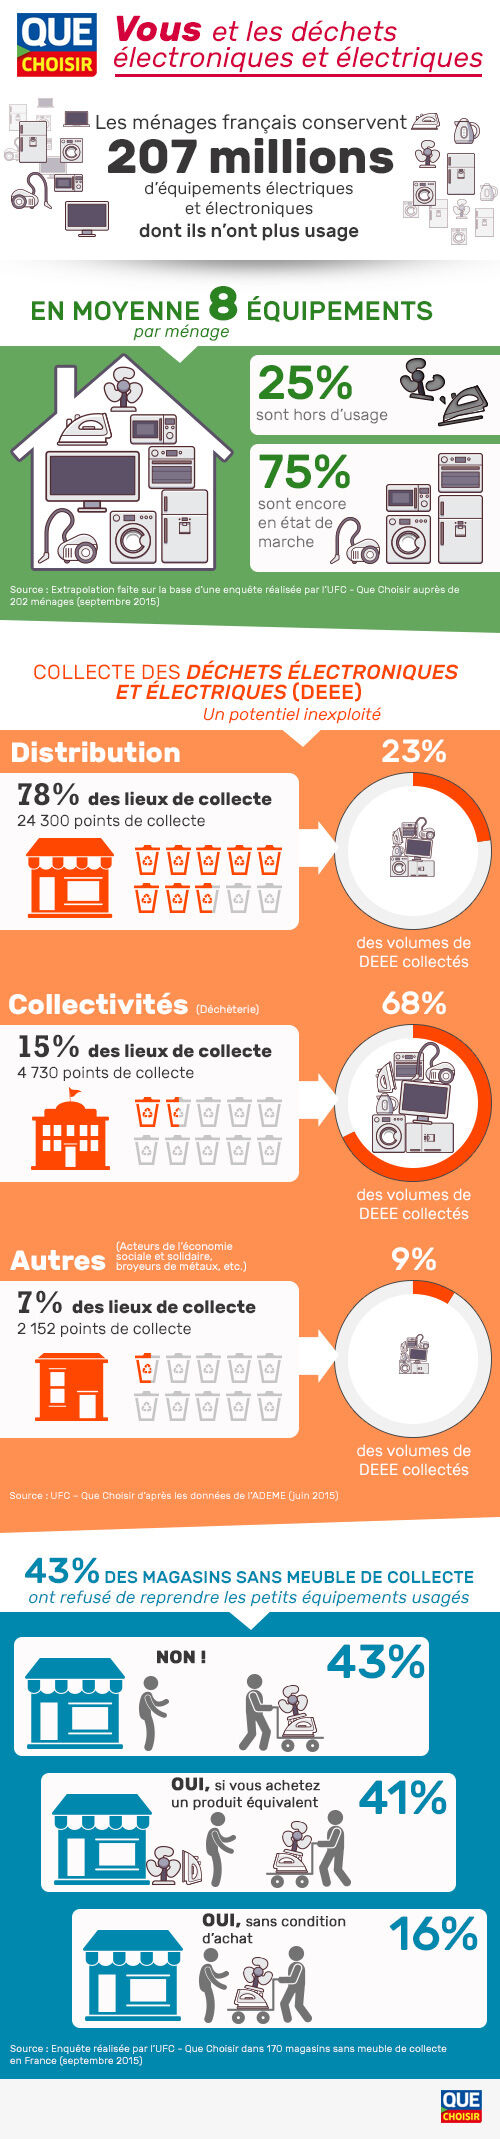 Ménages français et déchets électroniques et électriques